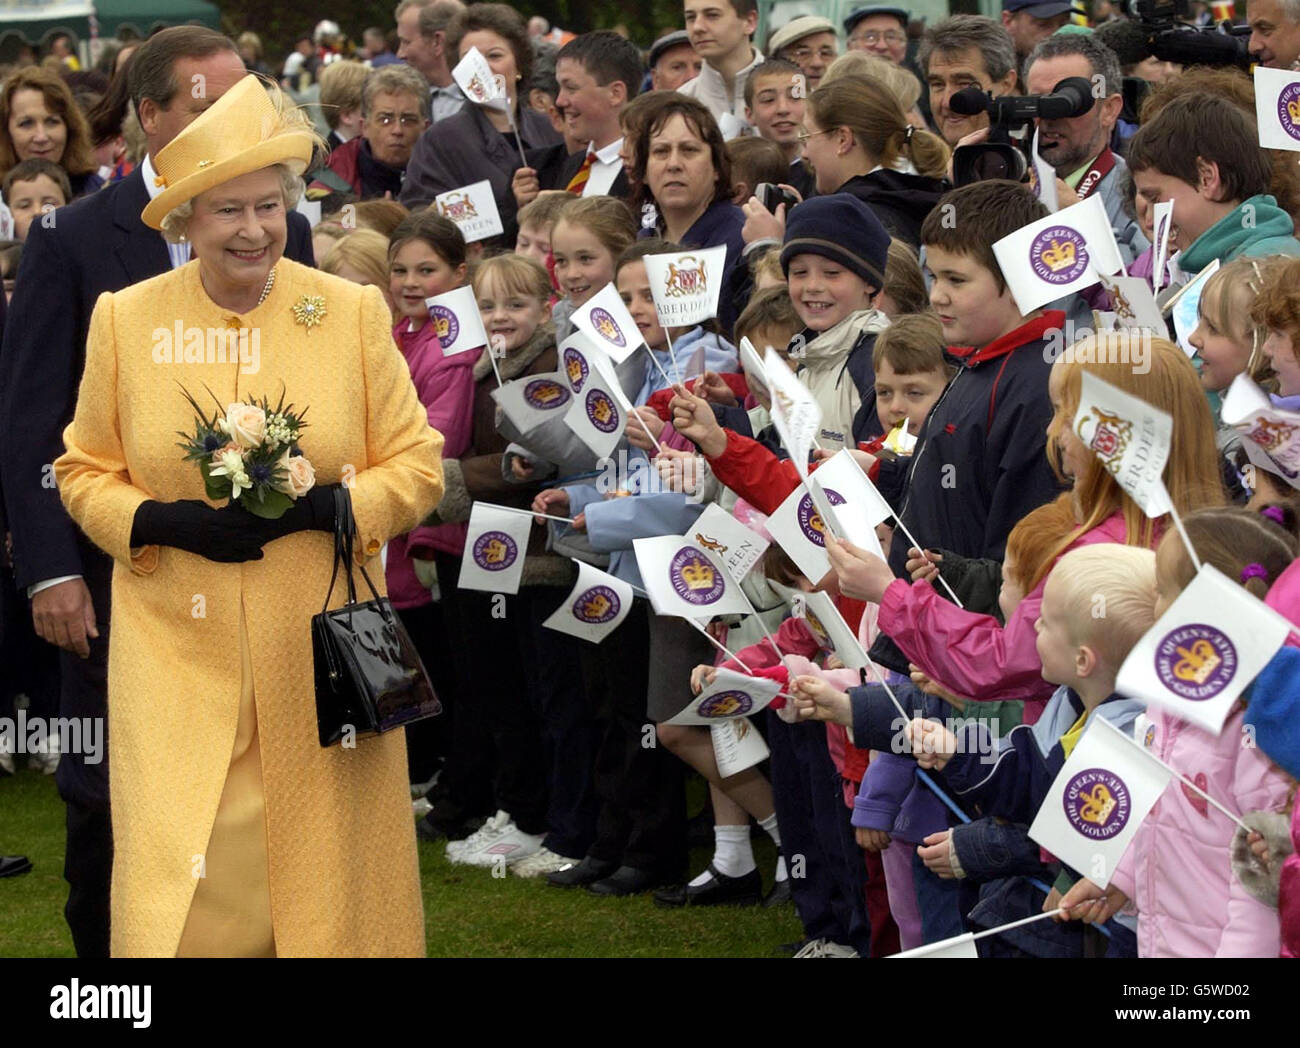 Königin Elizabeth II begrüßt während ihres Besuches im Duthie Park, Aberdeen, zur Fortsetzung ihrer Golden Jubilee-Tour, die sich auf der Reise befindet. Stockfoto